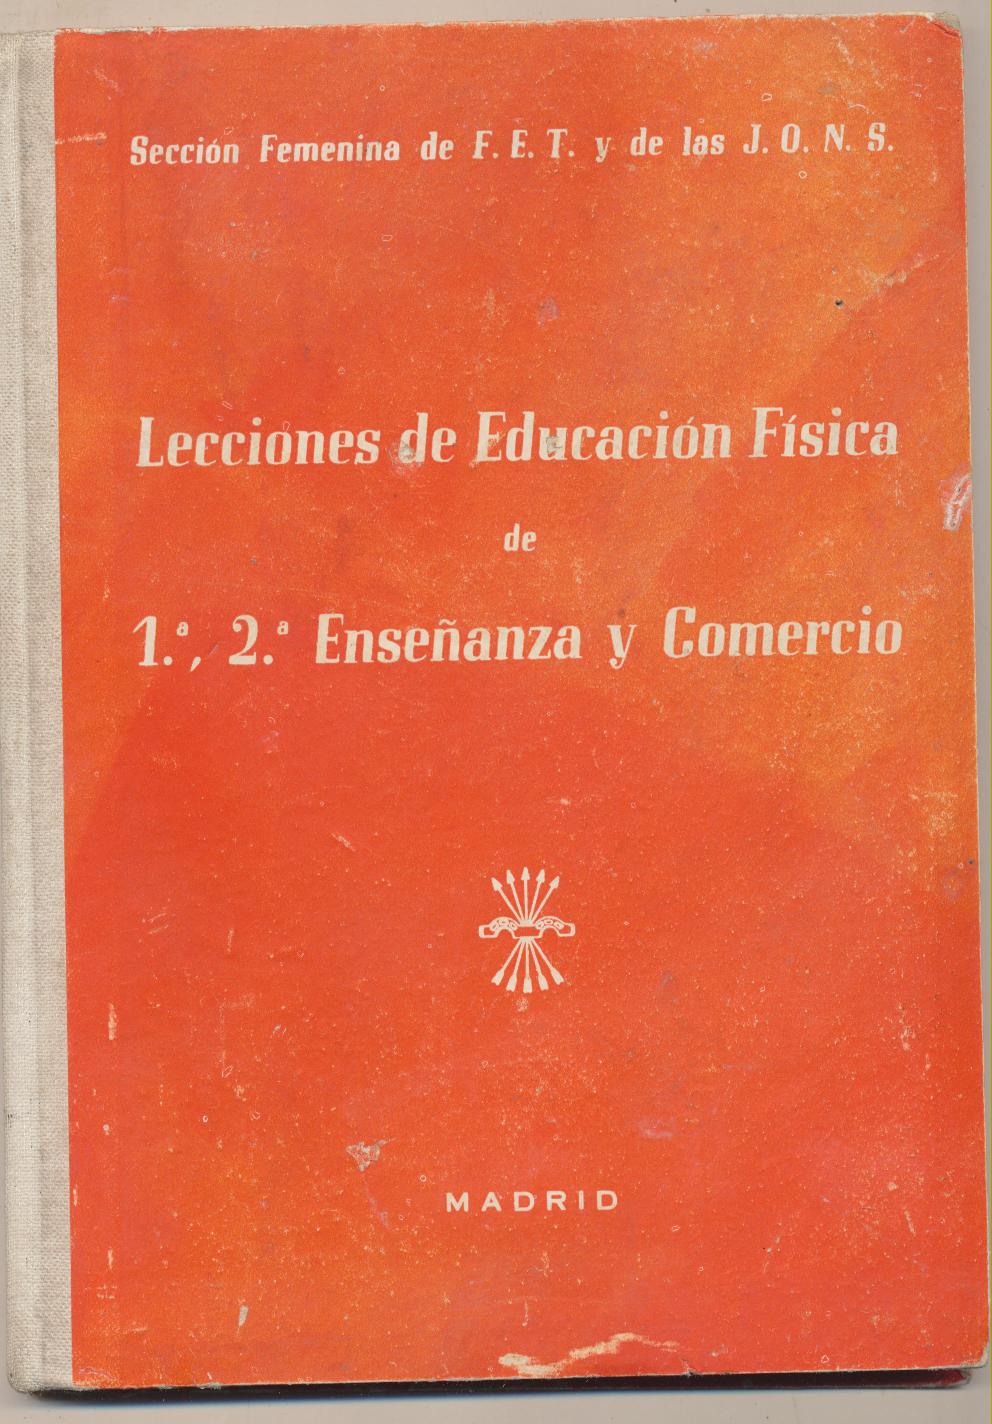 Lecciones de Educación Física de 1ª, 2ª Enseñanza y comercio. Sección Femenina-Madrid 1961